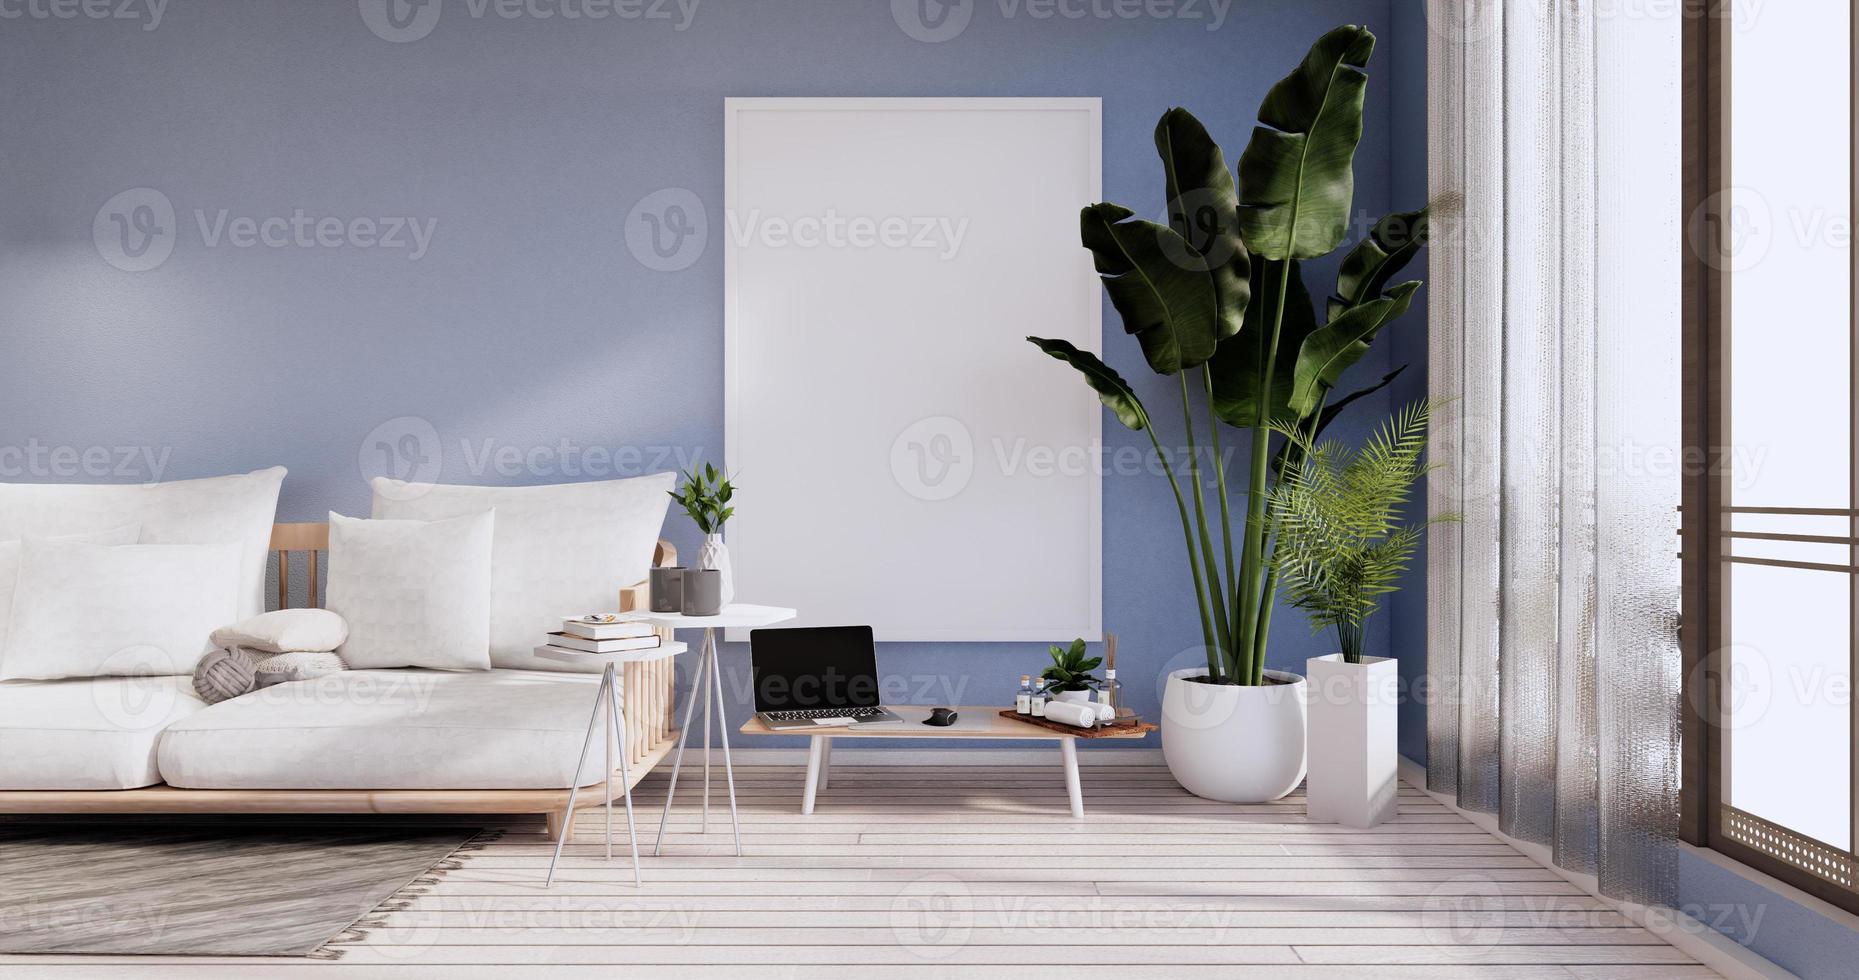 interni minimalisti, mobili per divani e piante, design moderno della stanza del cielo blu. Rendering 3d foto